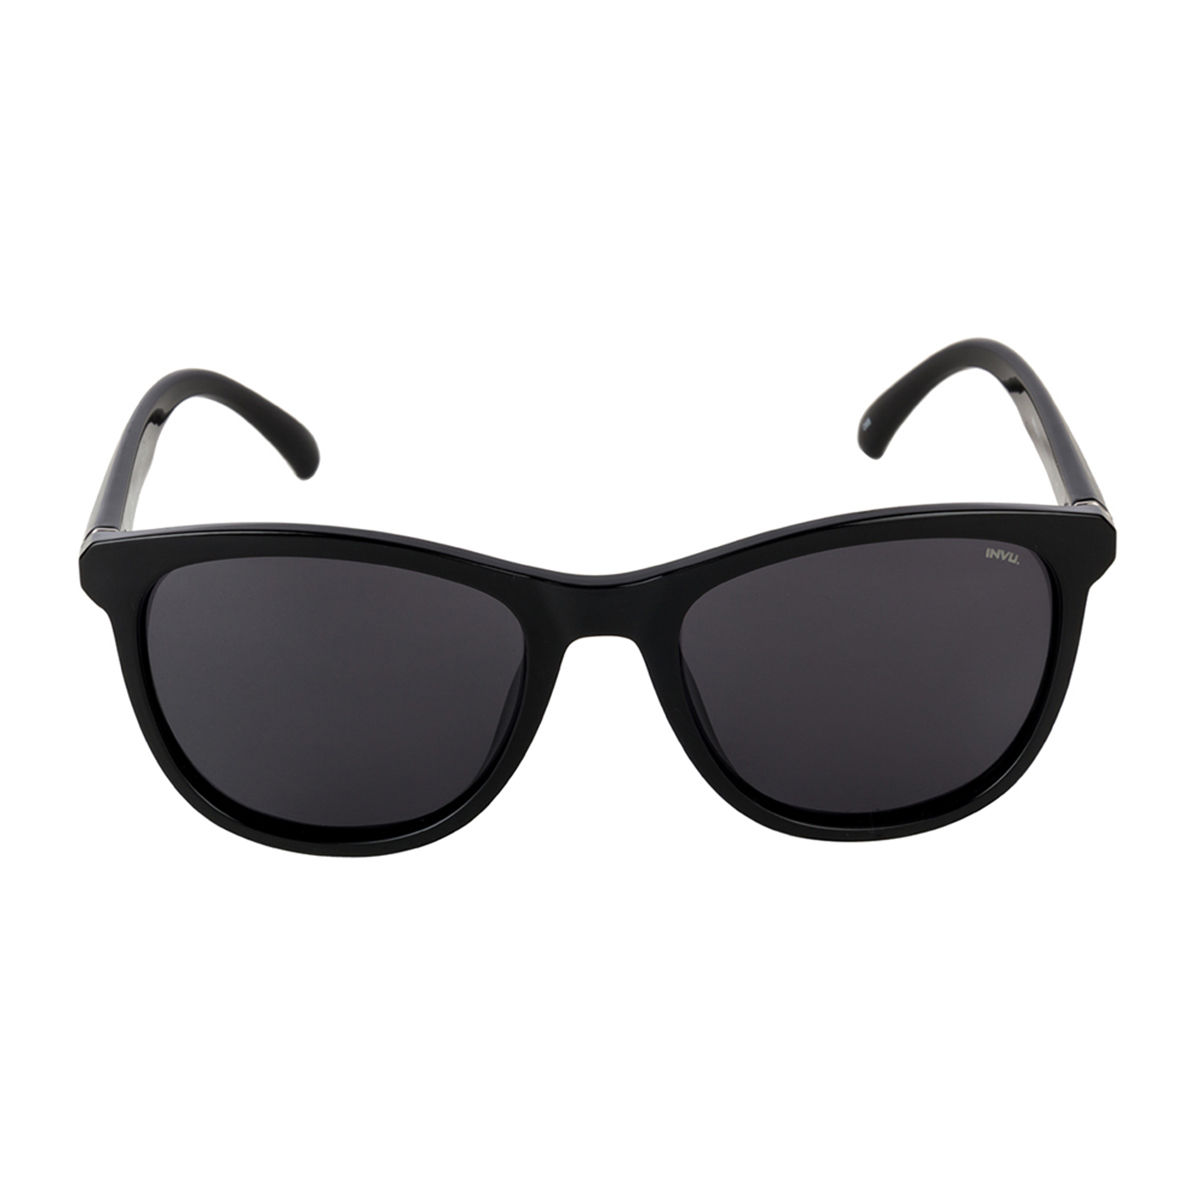 Invu Sunglasses Rectangular Sunglass With Smoke Lens For Men